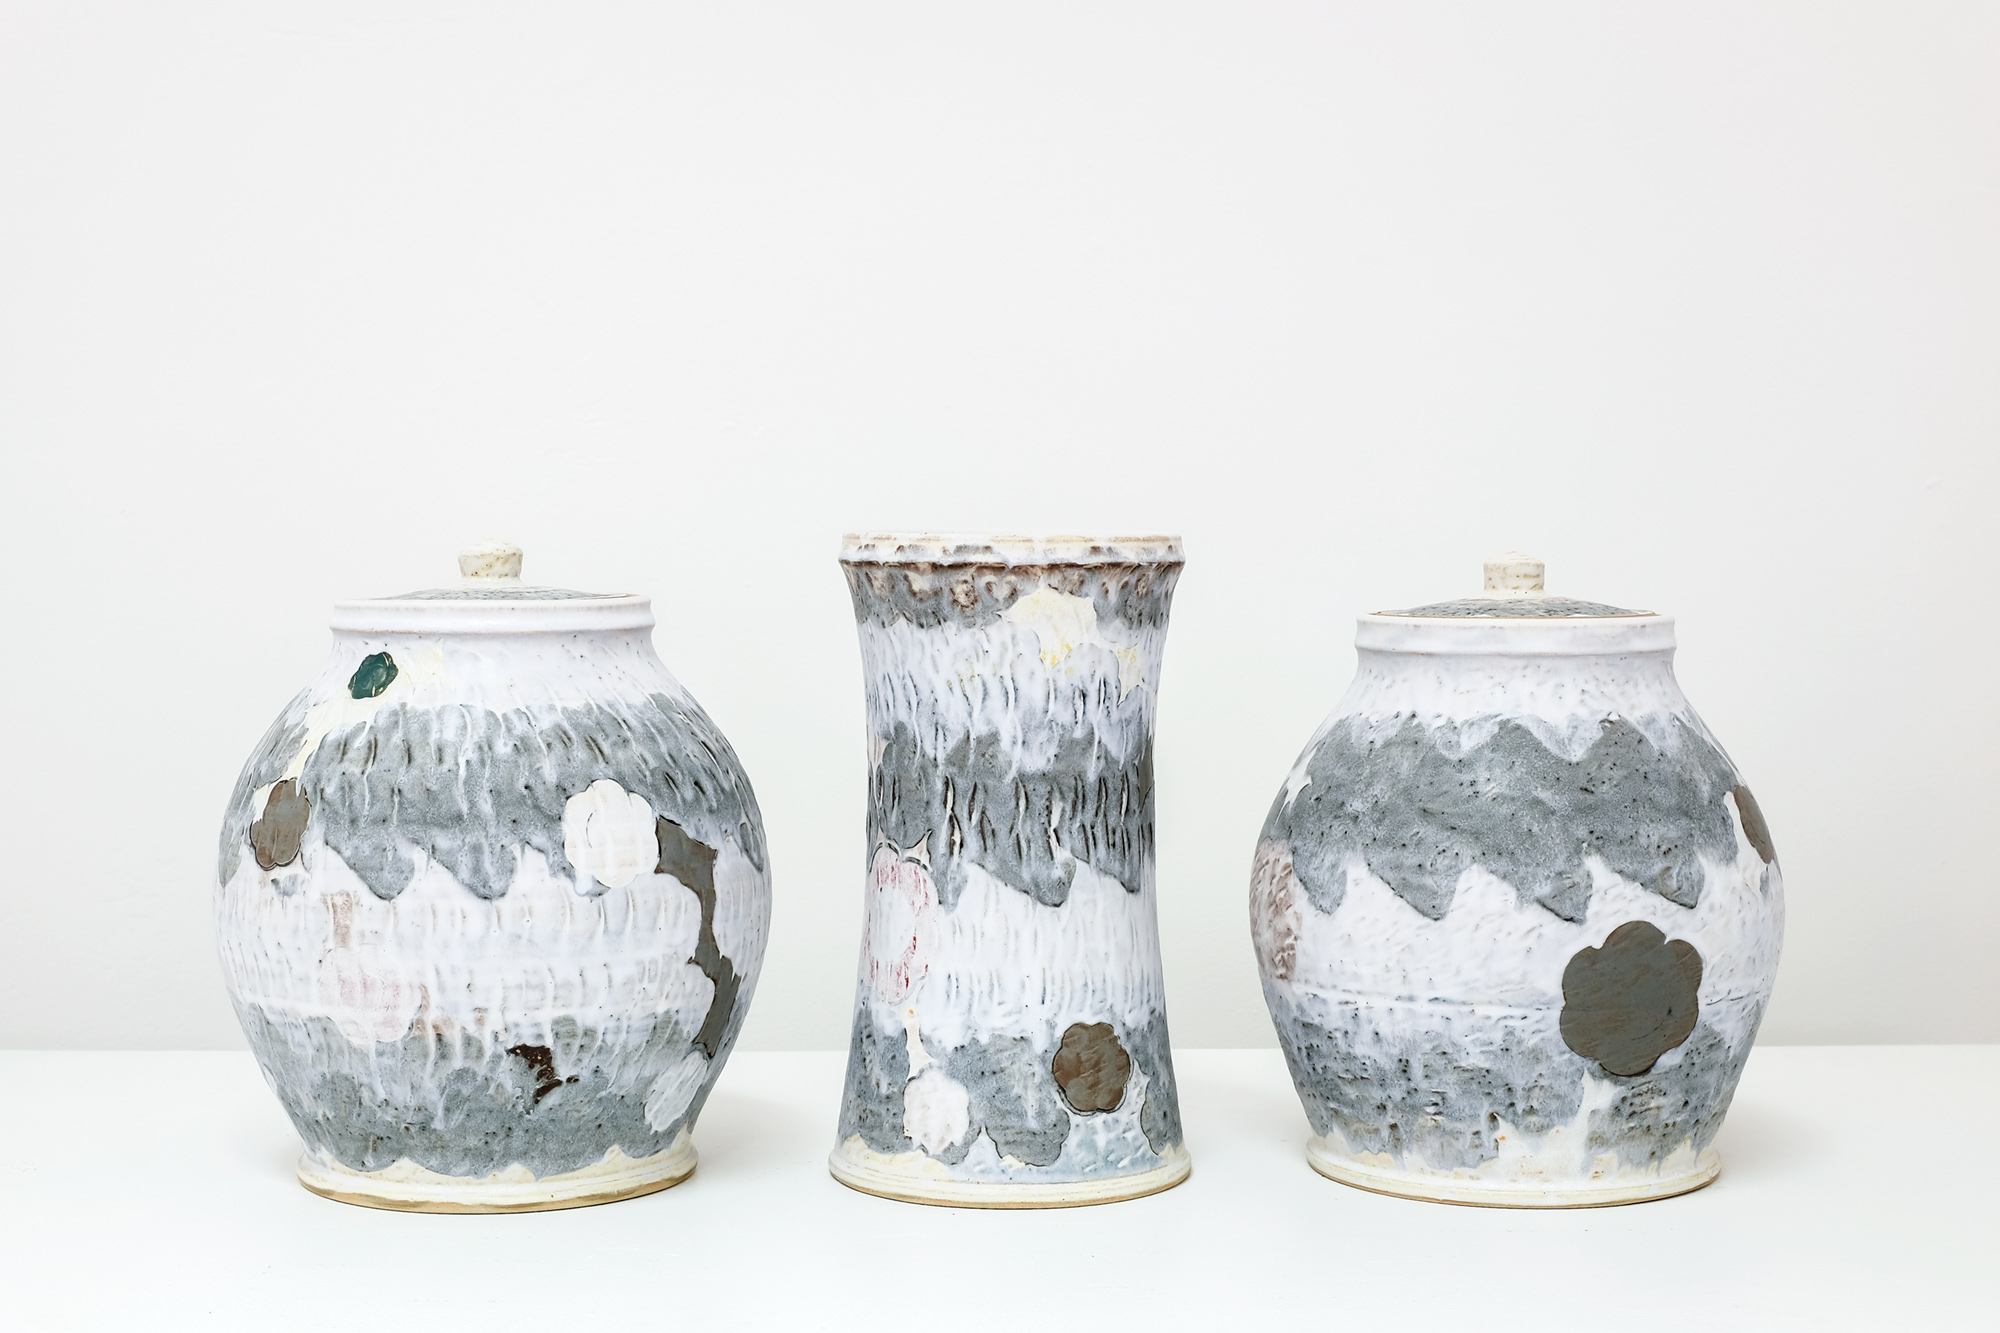 Sanam Emami, Garniture of Three Vases, 2021